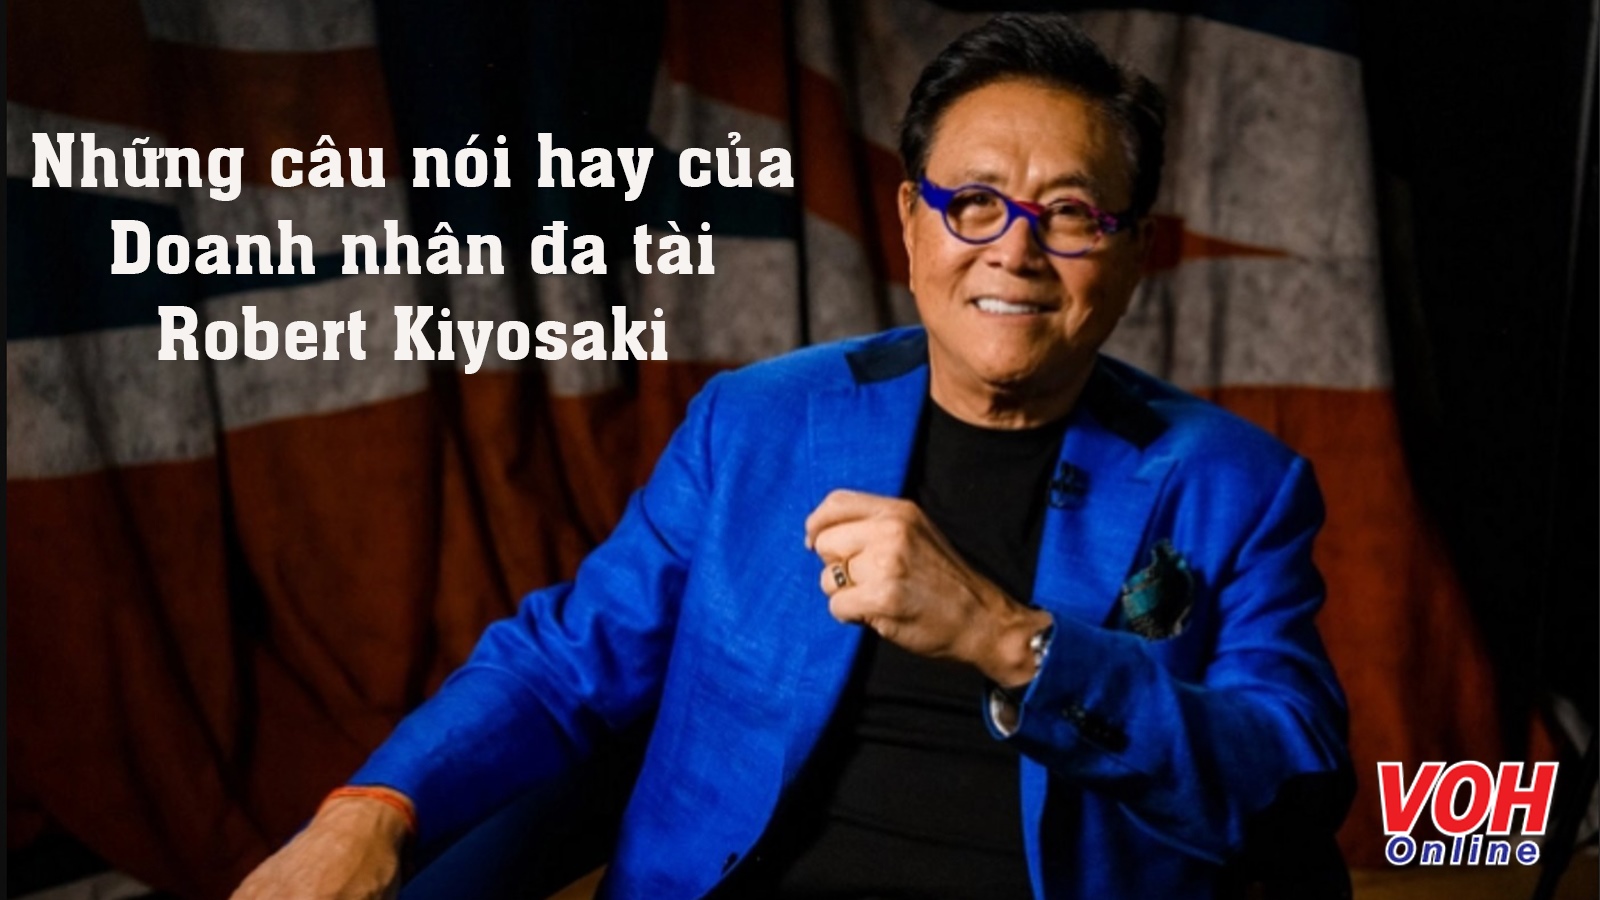 Tuyển tập những câu nói hay của Robert Kiyosaki - Doanh nhân đa tài nước Mỹ